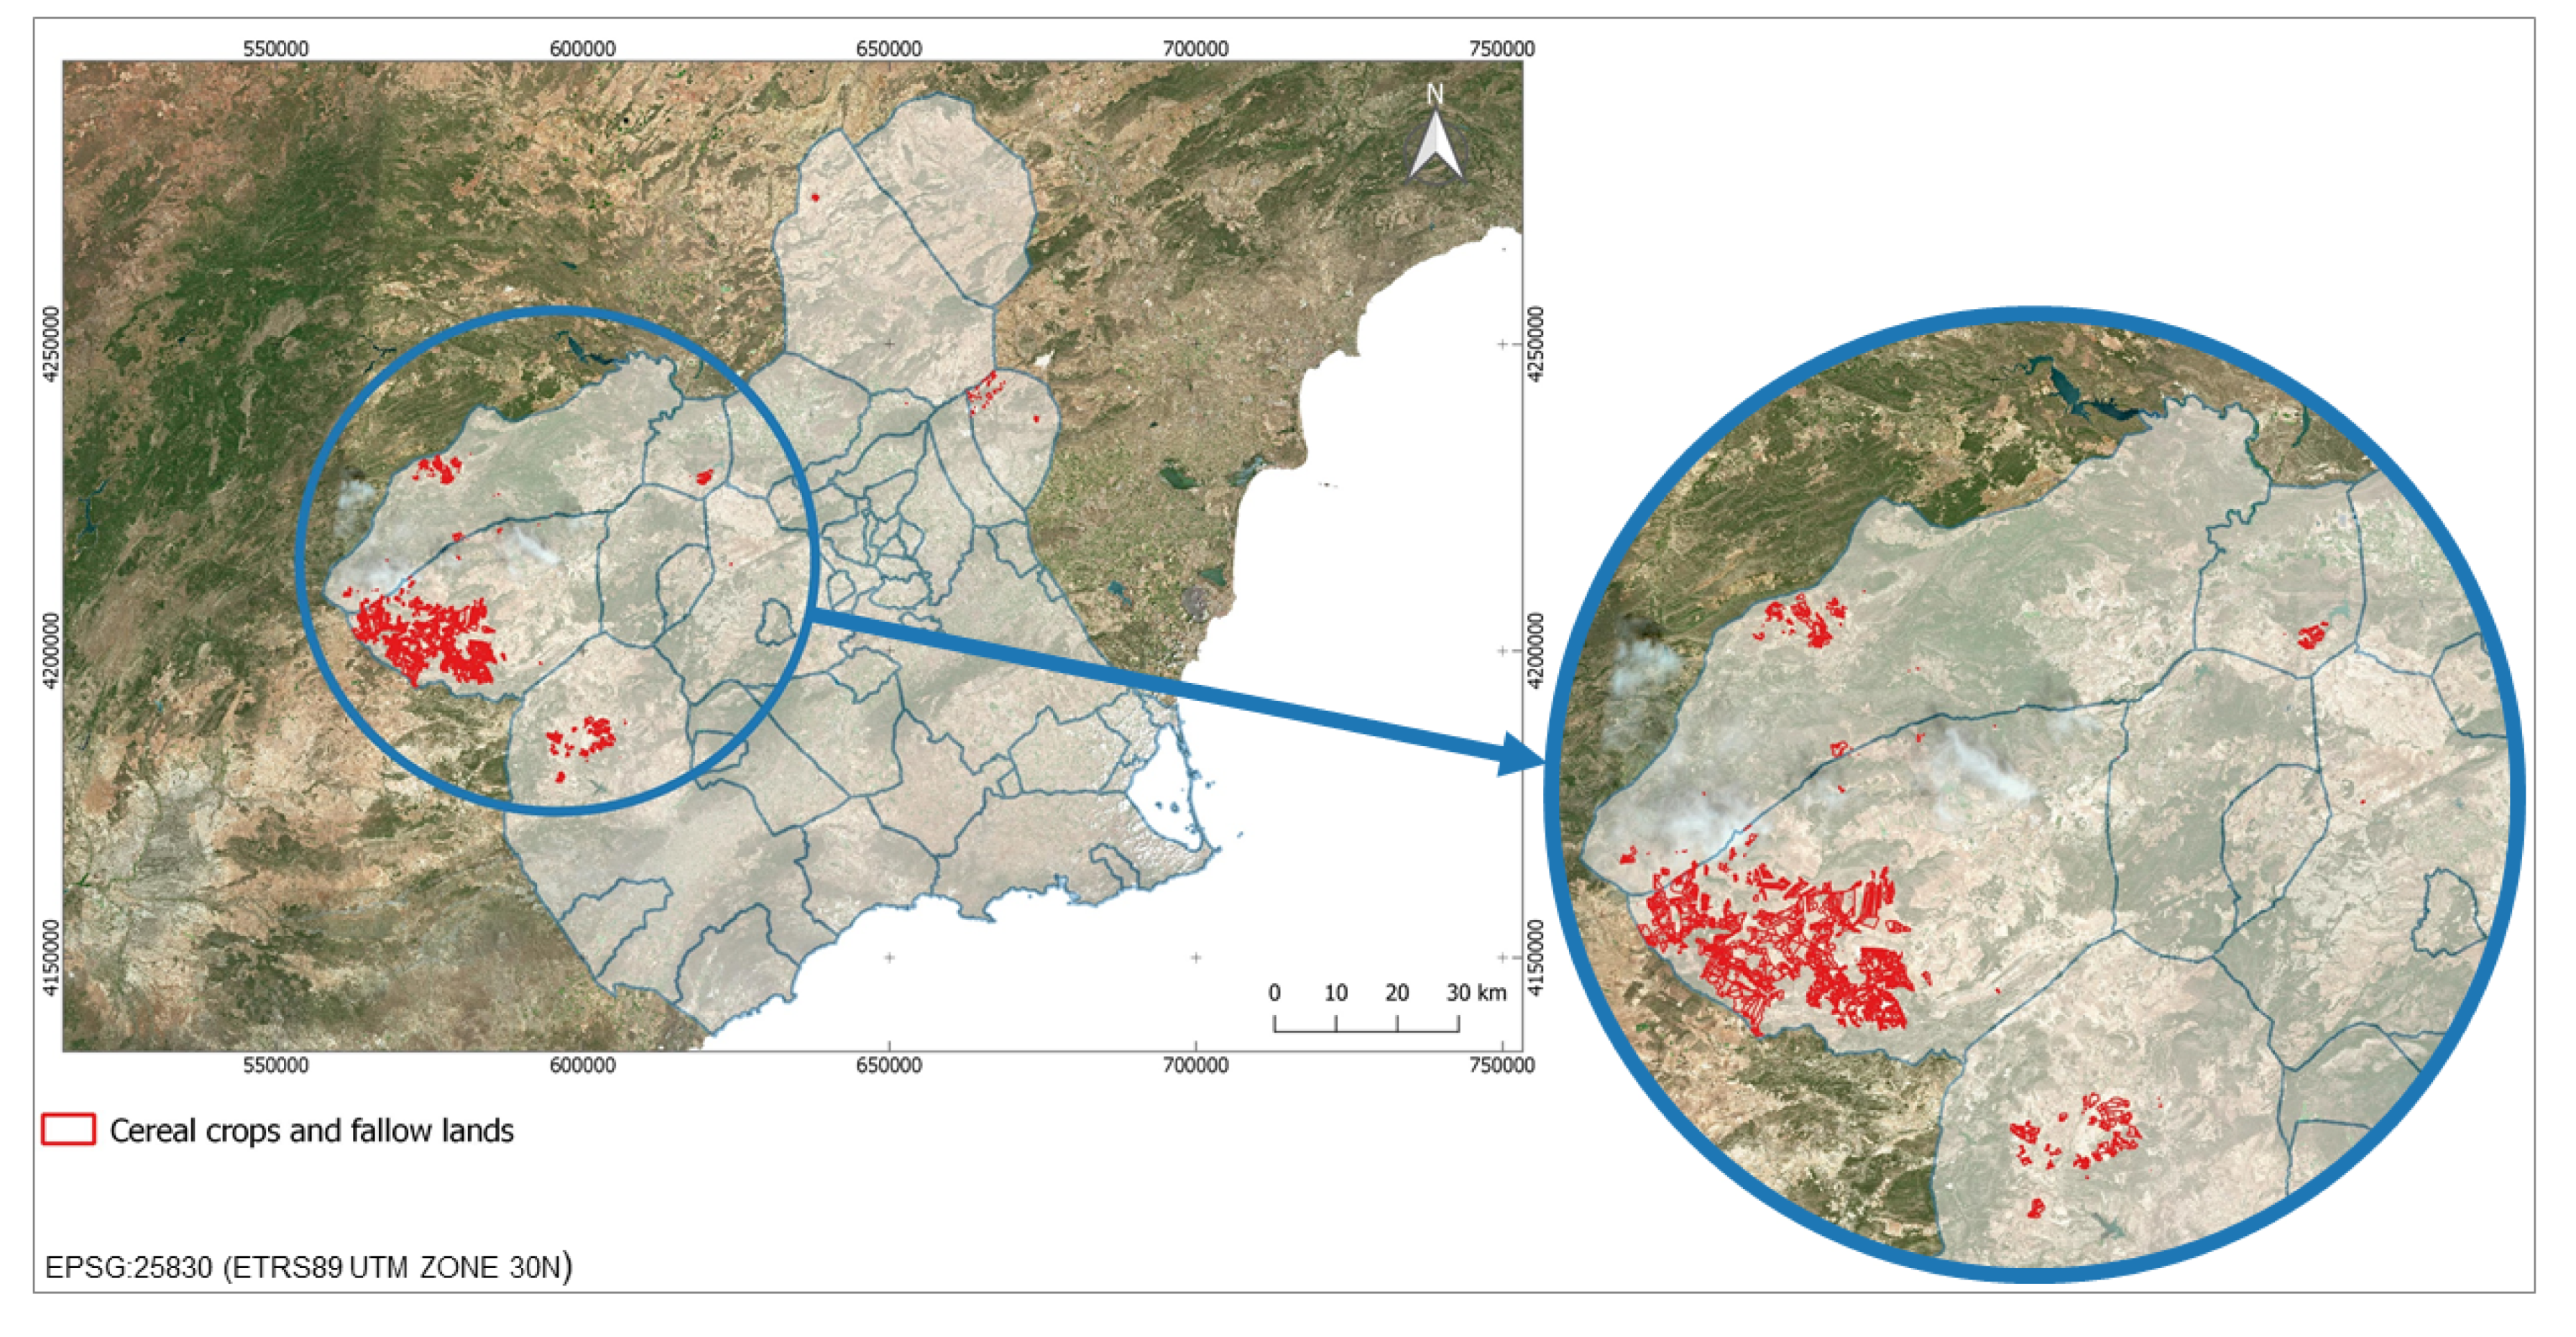 Visor cartográfico de Portugal  : visualiza mapas online